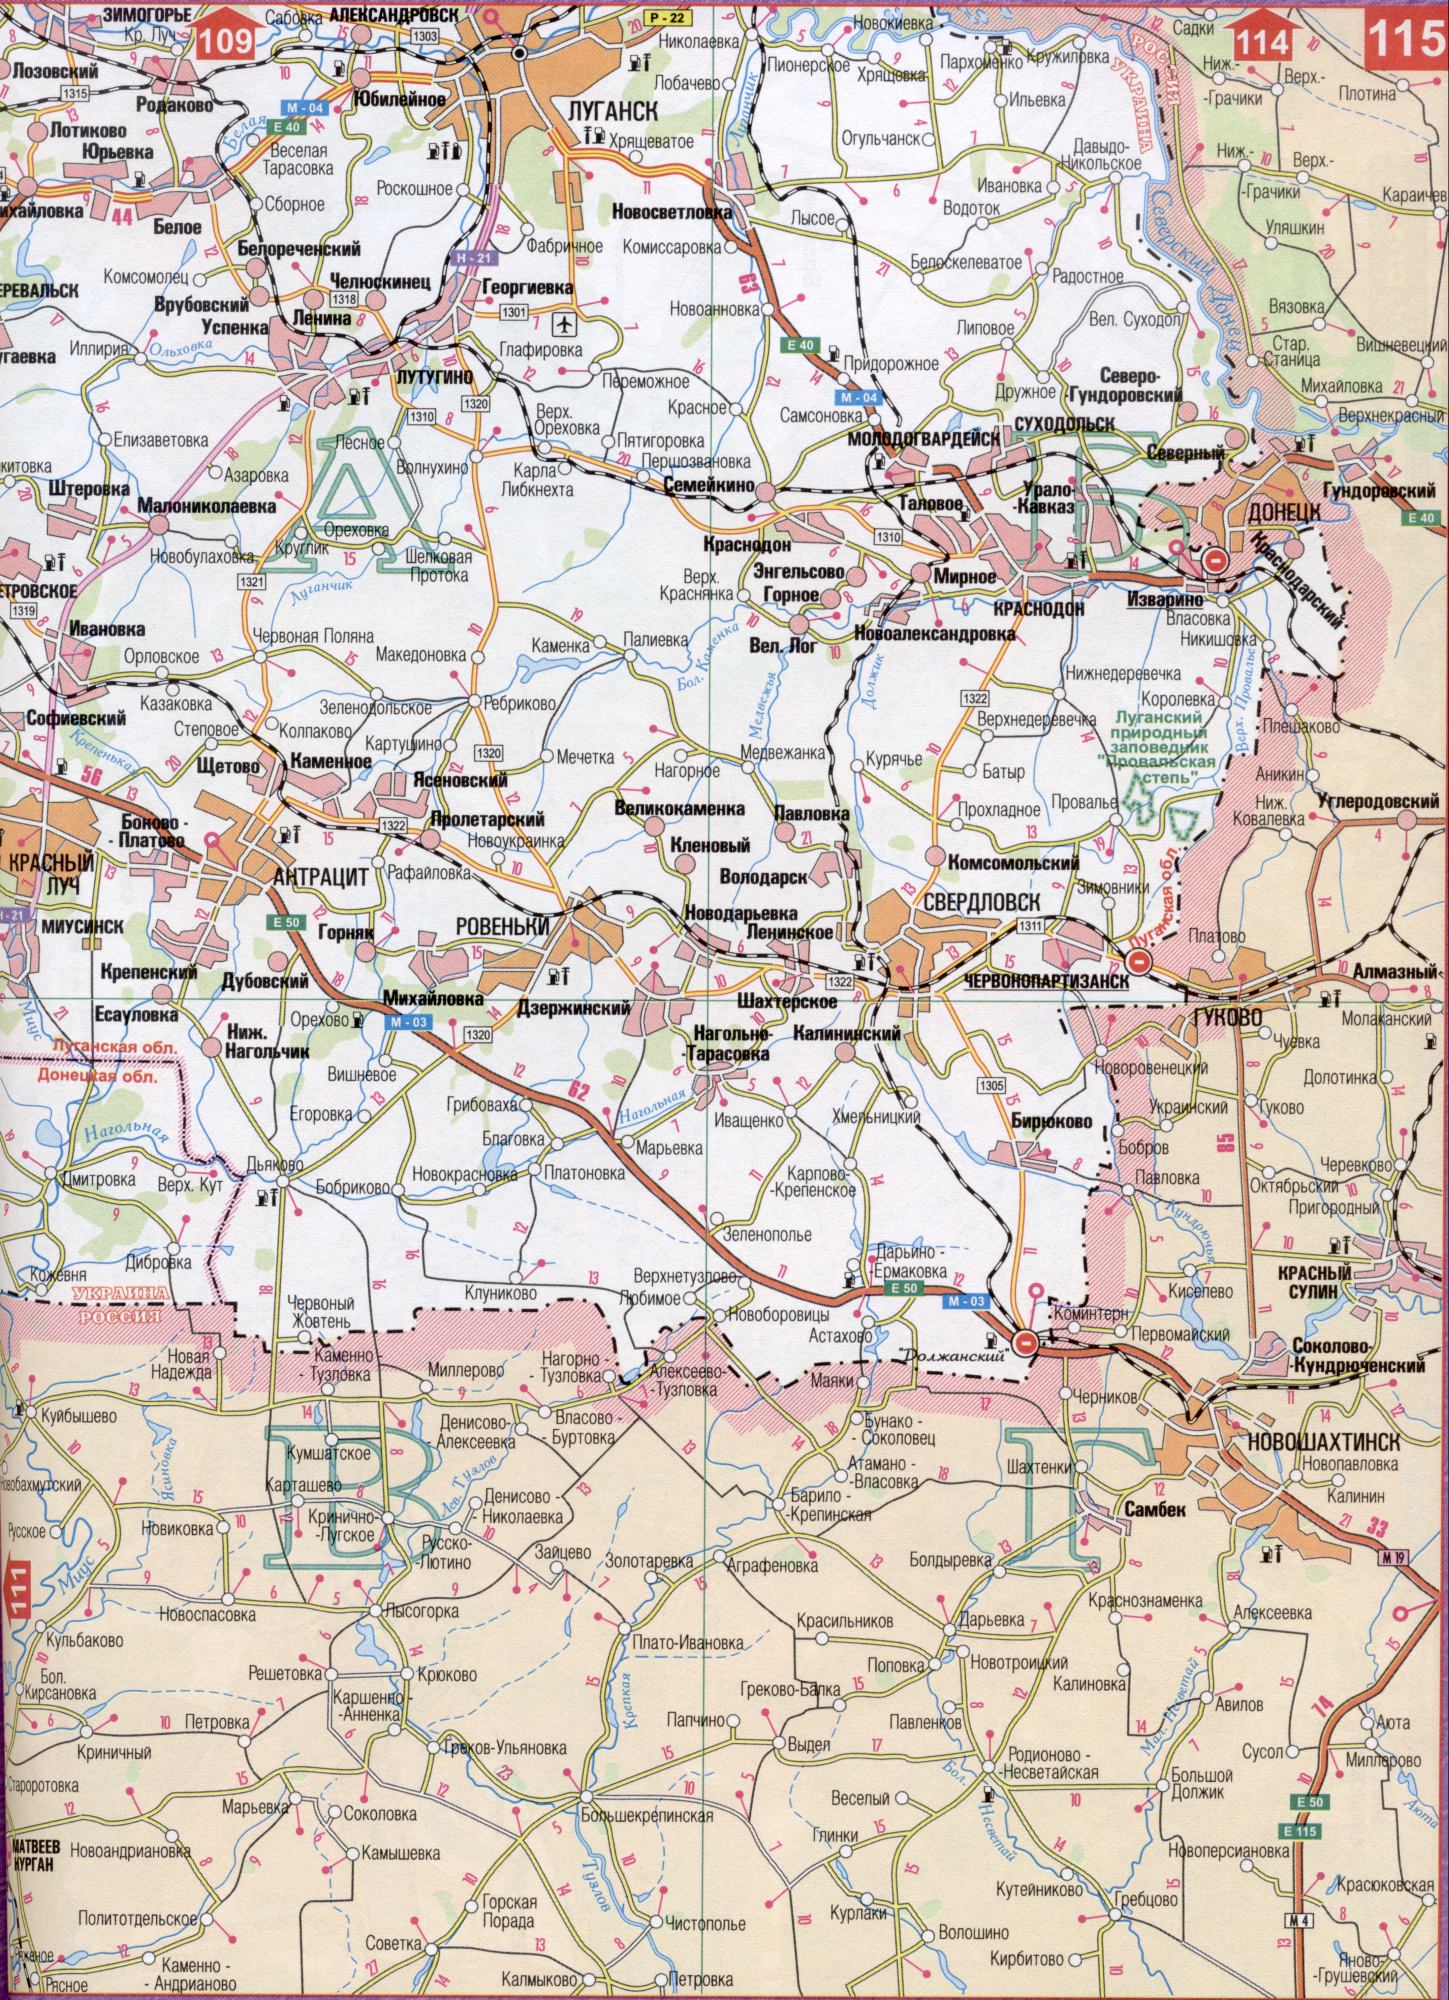 Karte von Lugansk Region der Ukraine (Regionalzentrum Lugansk). Laden Sie detaillierte Karten von Straßen, B2 - Seidenkanal Lysogorka, Beloskelevatoe, Luxus